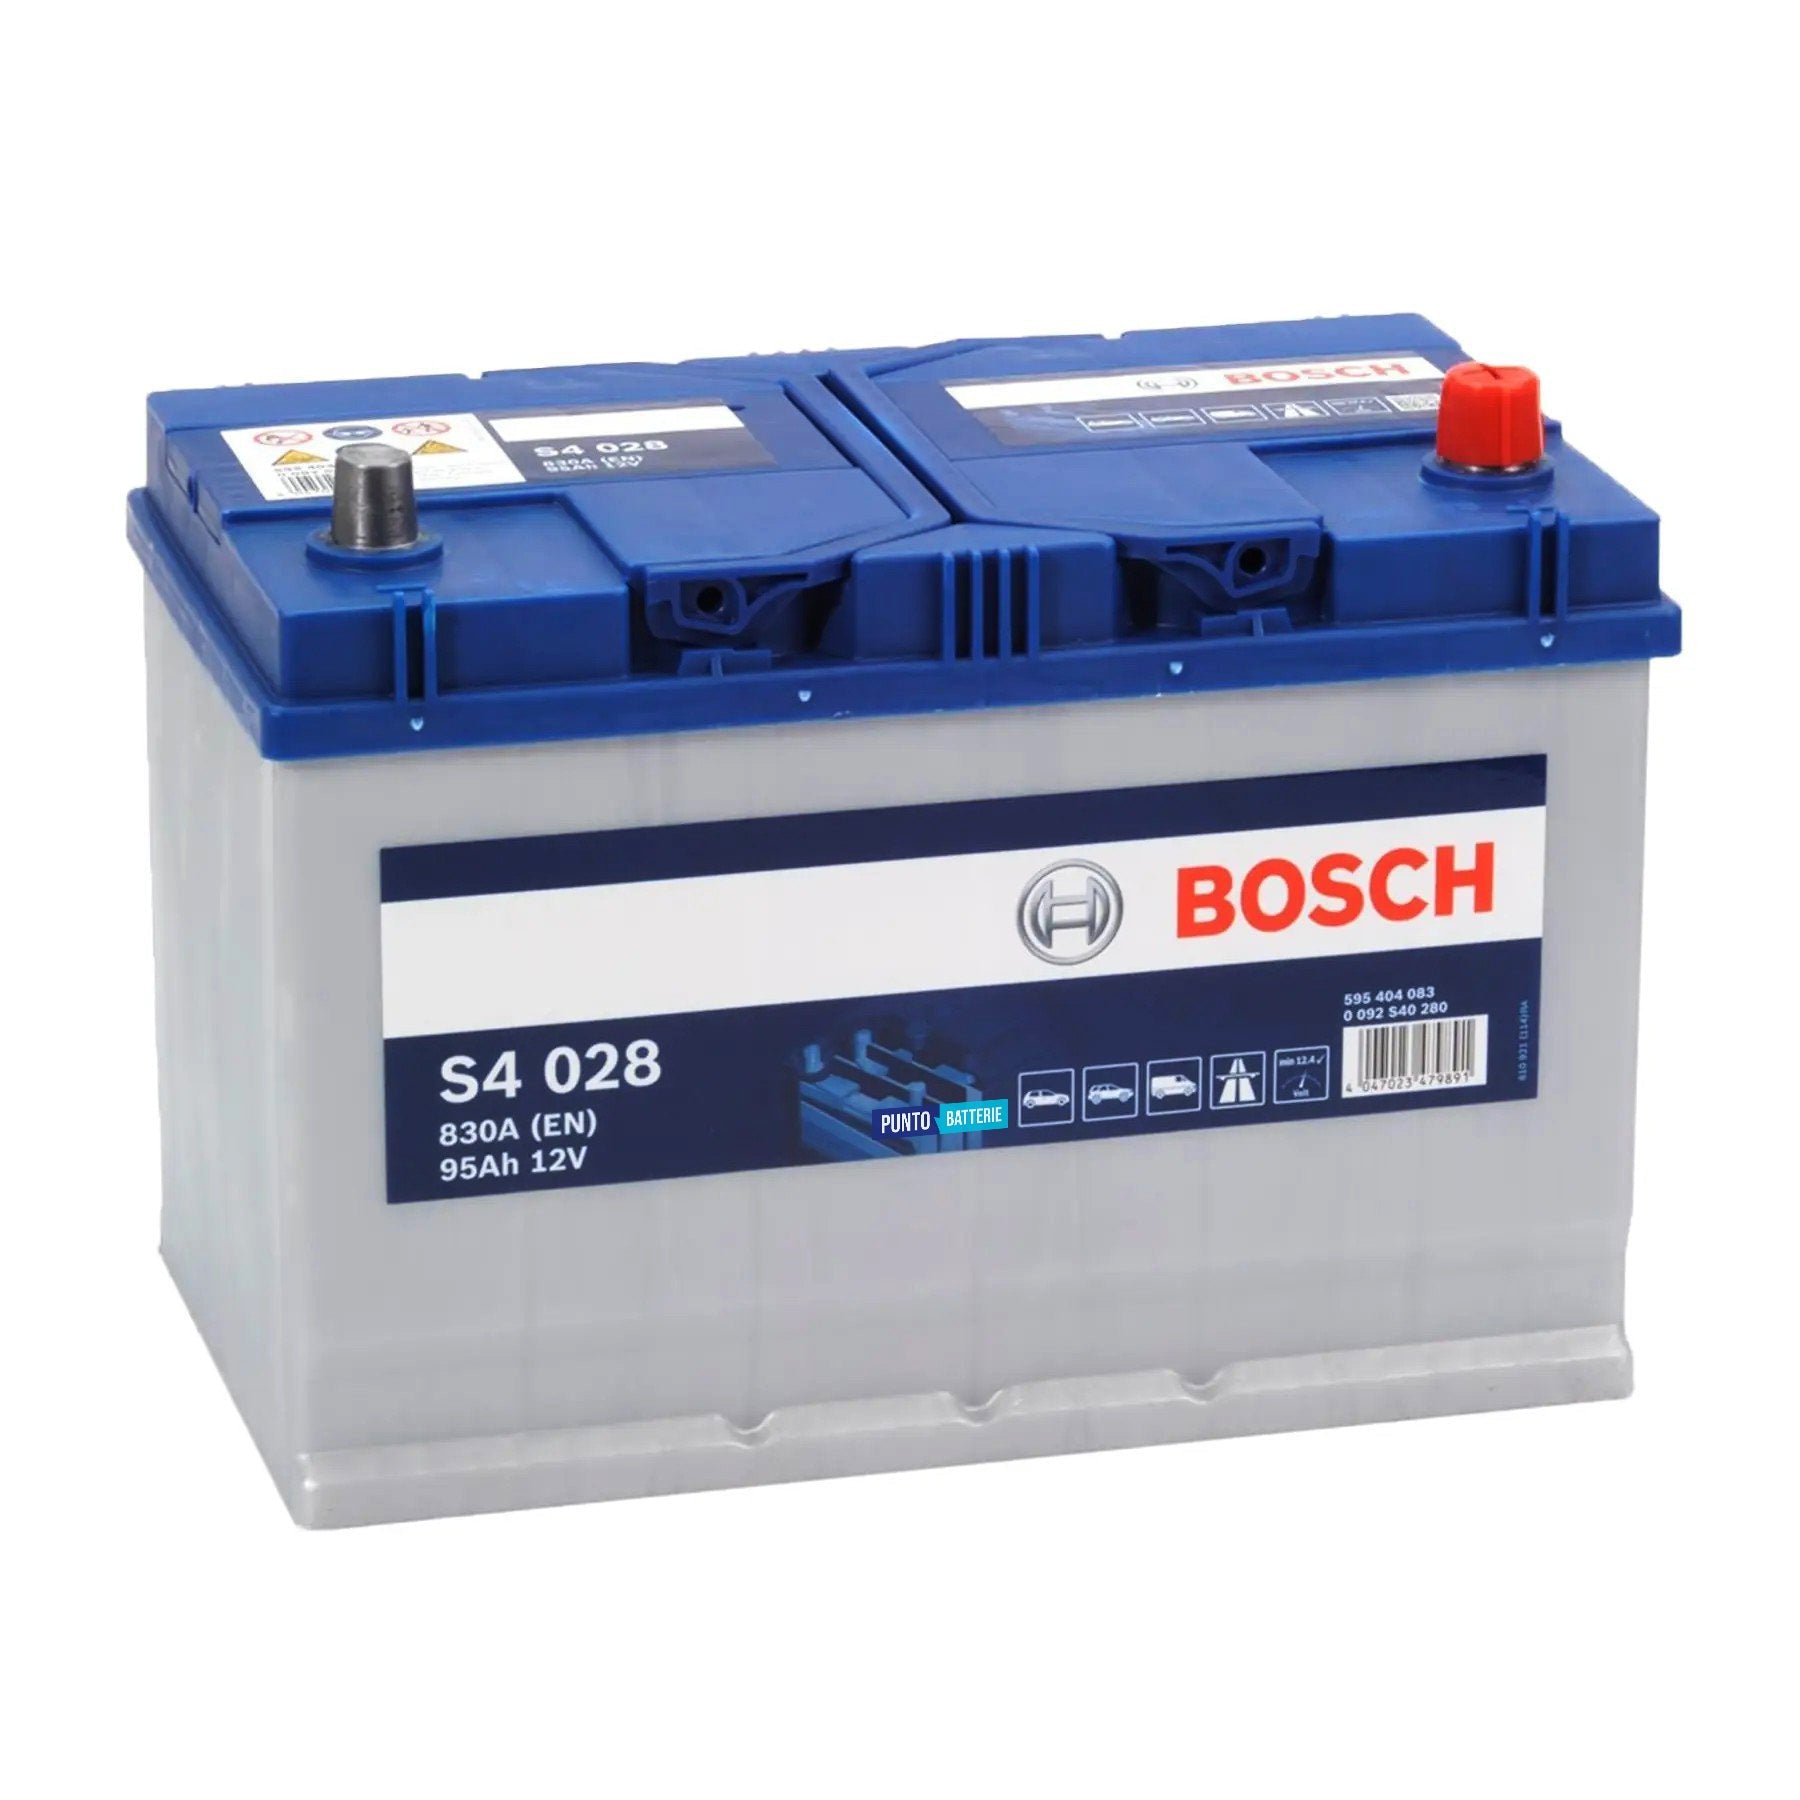 Batteria originale Bosch S4 S4 028, dimensioni 306 x 173 x 225, polo positivo a destra, 12 volt, 95 amperora, 830 ampere. Batteria per auto e veicoli leggeri.